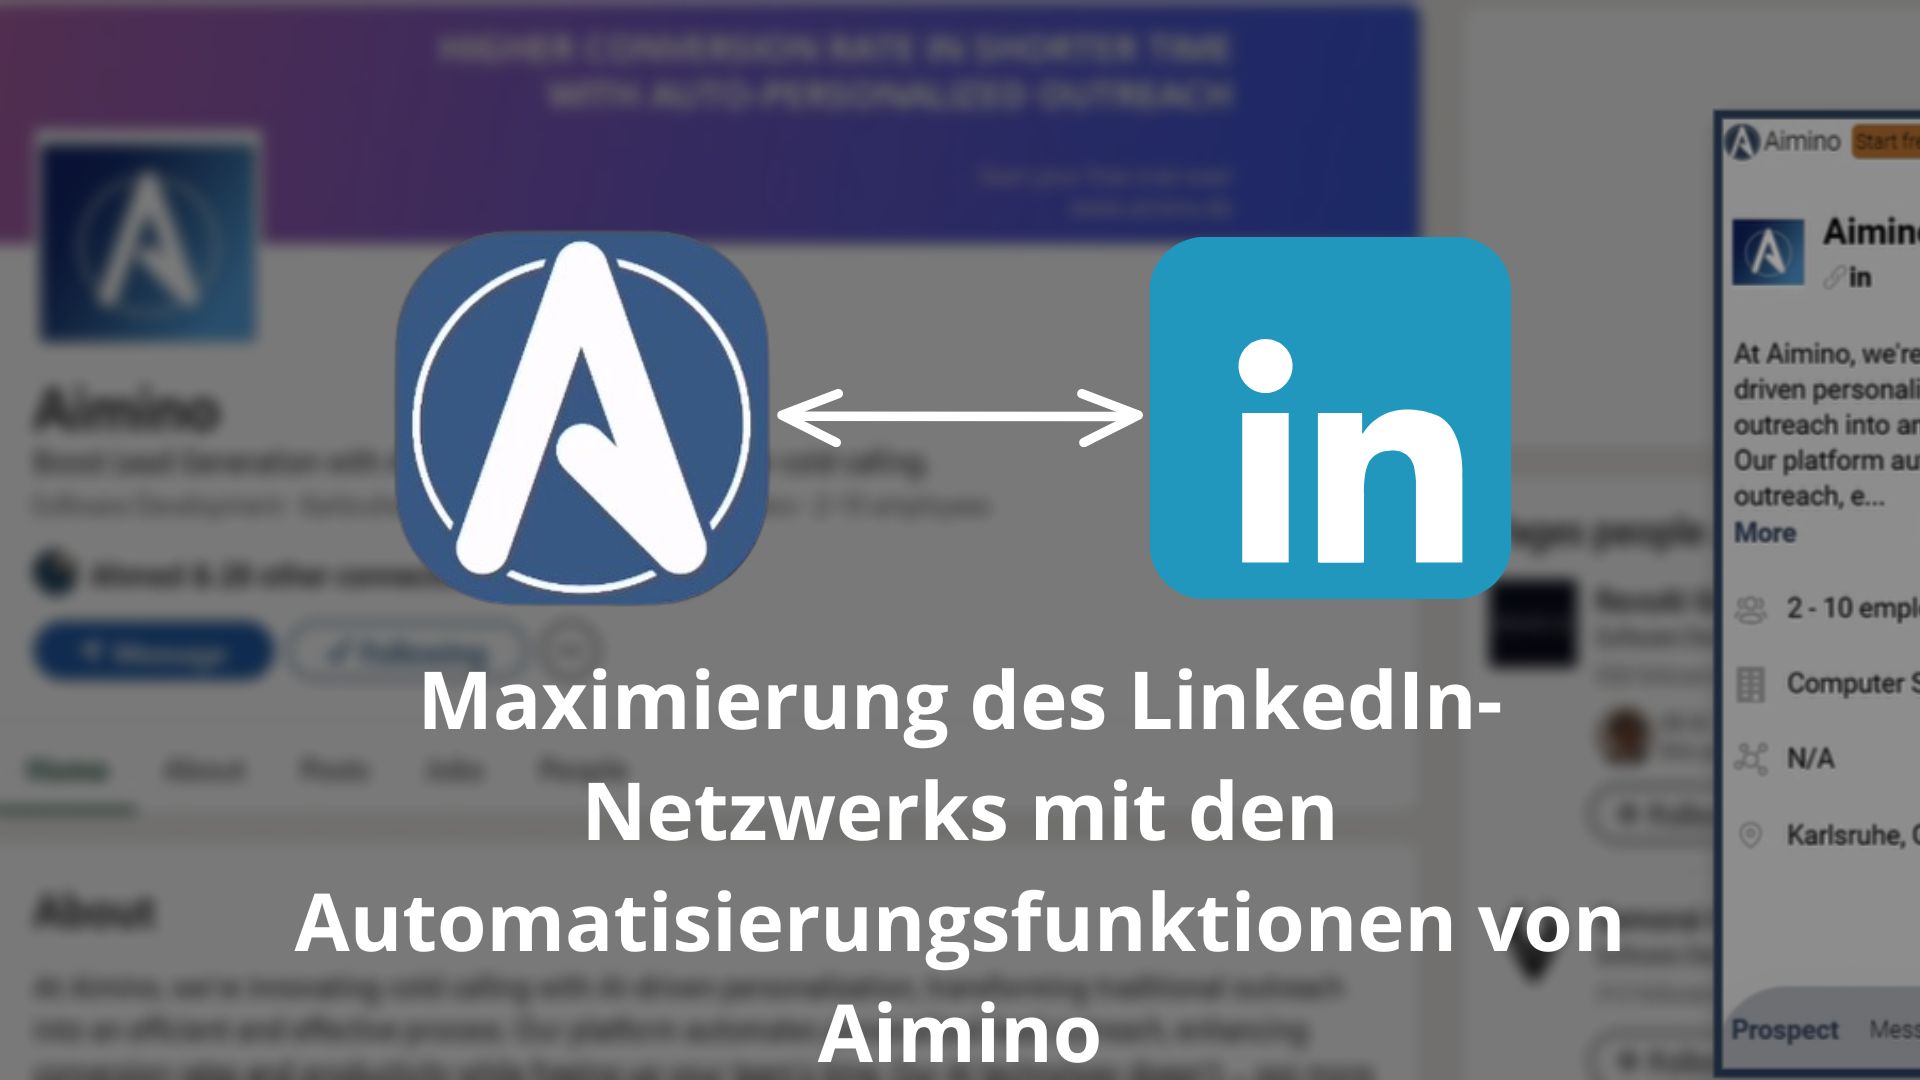 Maximierung des LinkedIn-Netzwerks mit den Automatisierungsfunktionen von Aimino